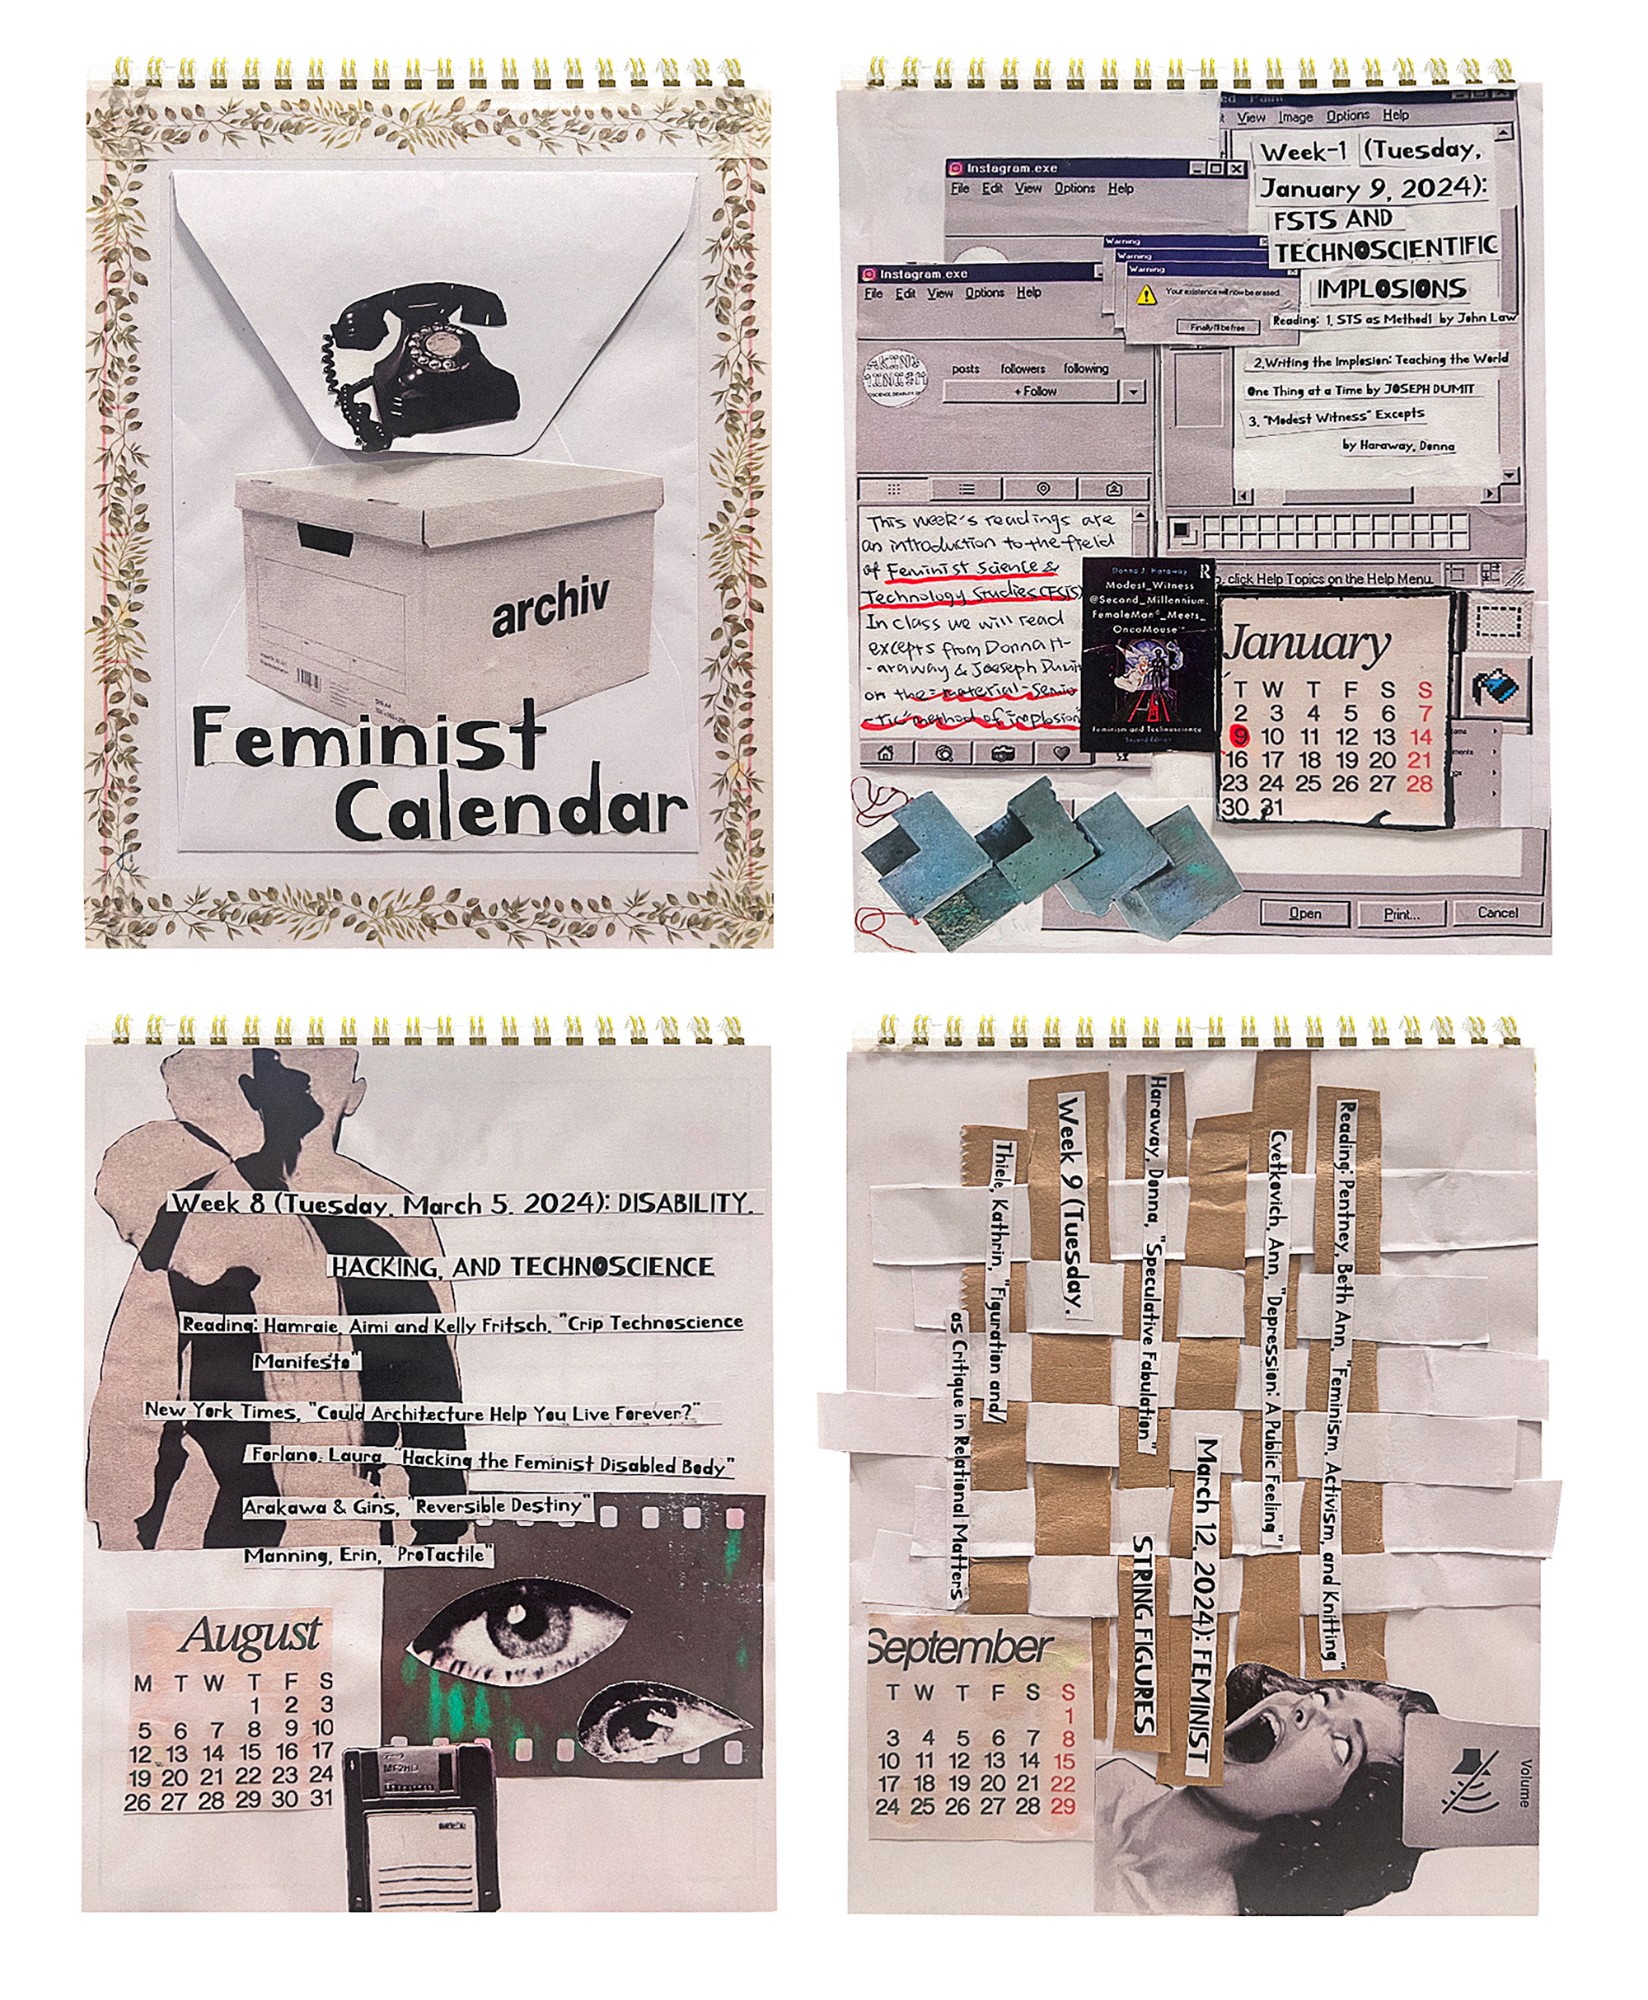 “Feminist Calendar” by Monica Fu